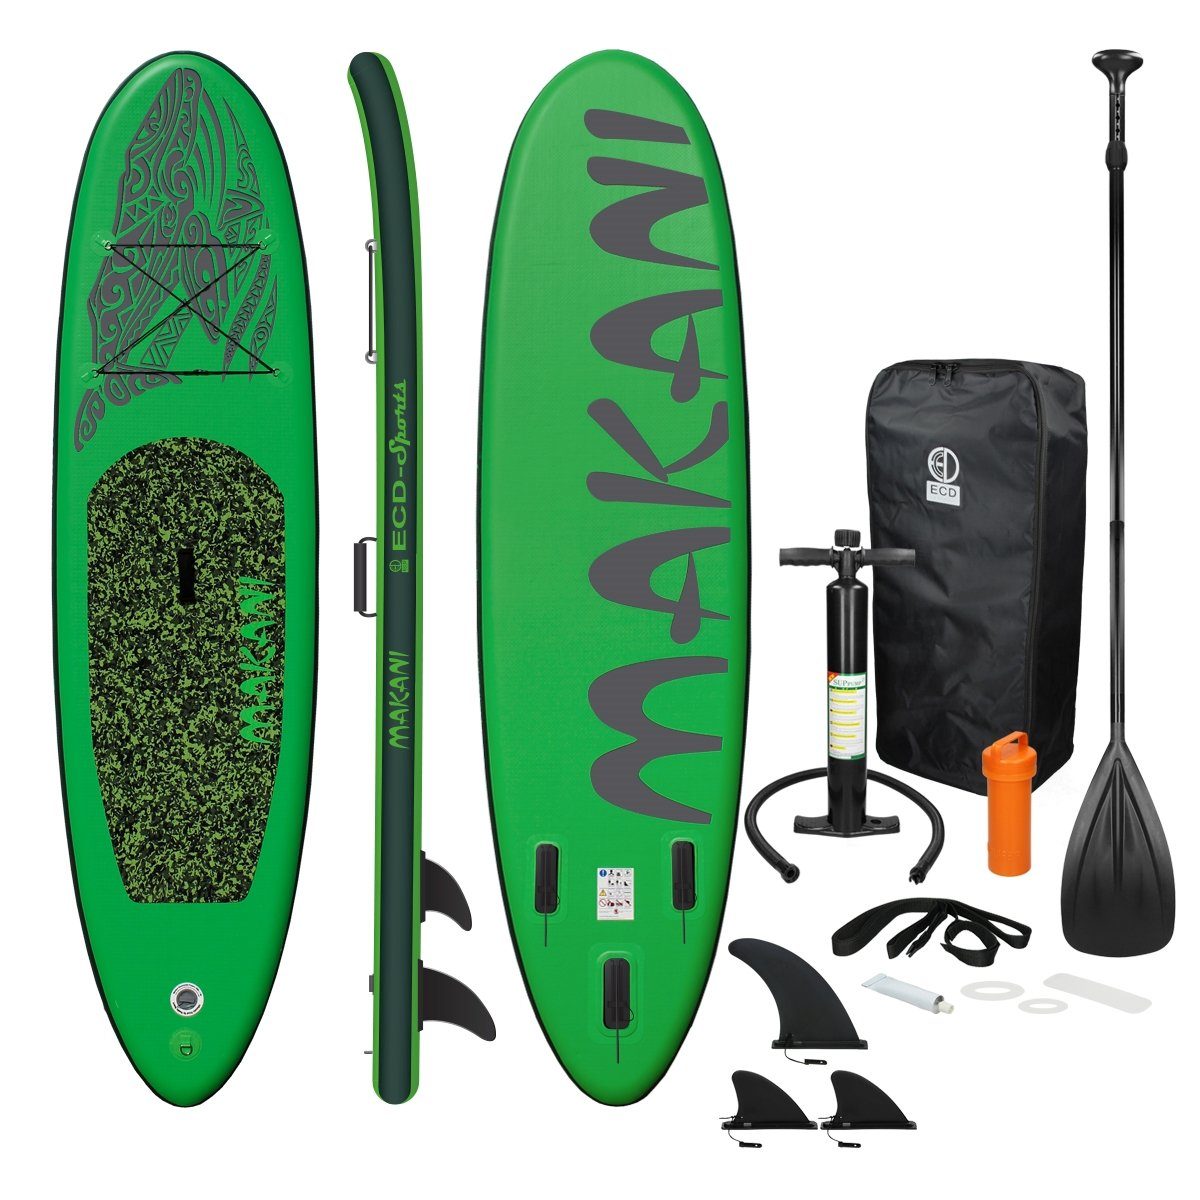 ECD Germany SUP-Board Stand Up Paddle Board aus PVC Paddelboard, Surfboard Grün 320x82x15 cm mit Anti-Rutsch Belag Komplett Set